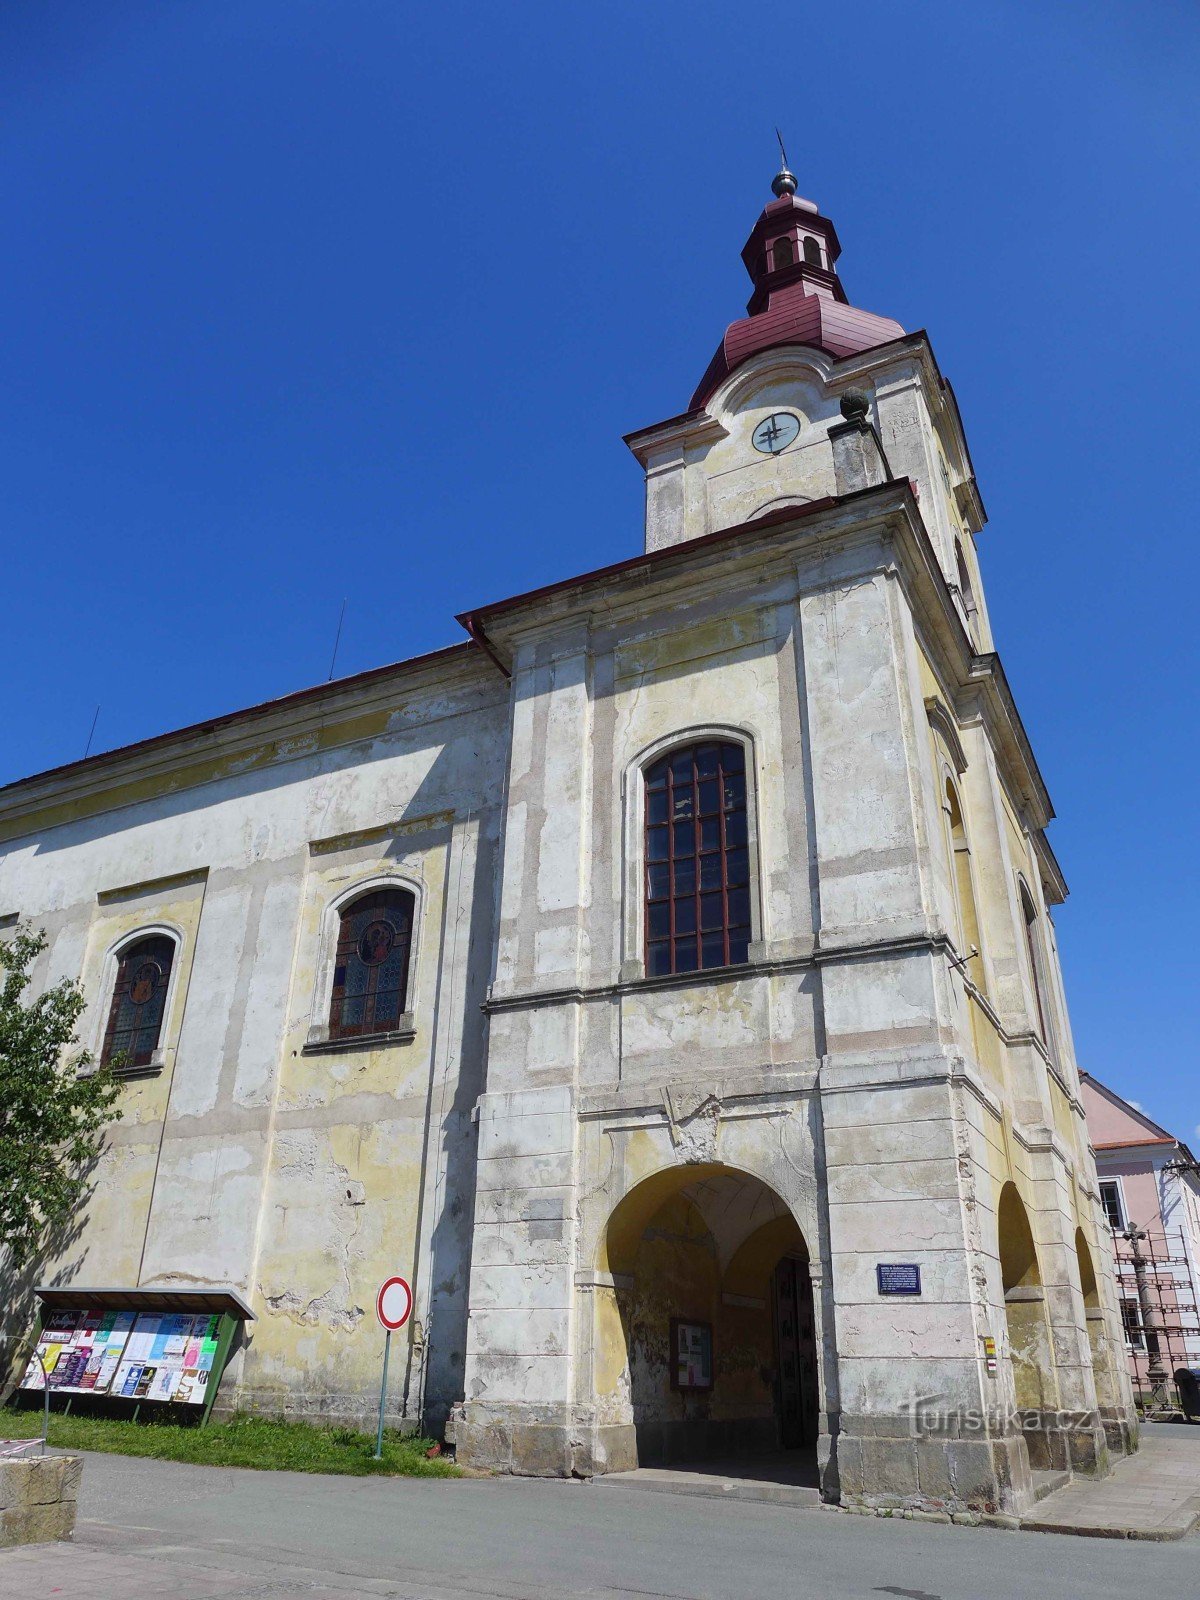 Teplice nad Metují - Pyhän Nikolauksen kirkko. Lawrence